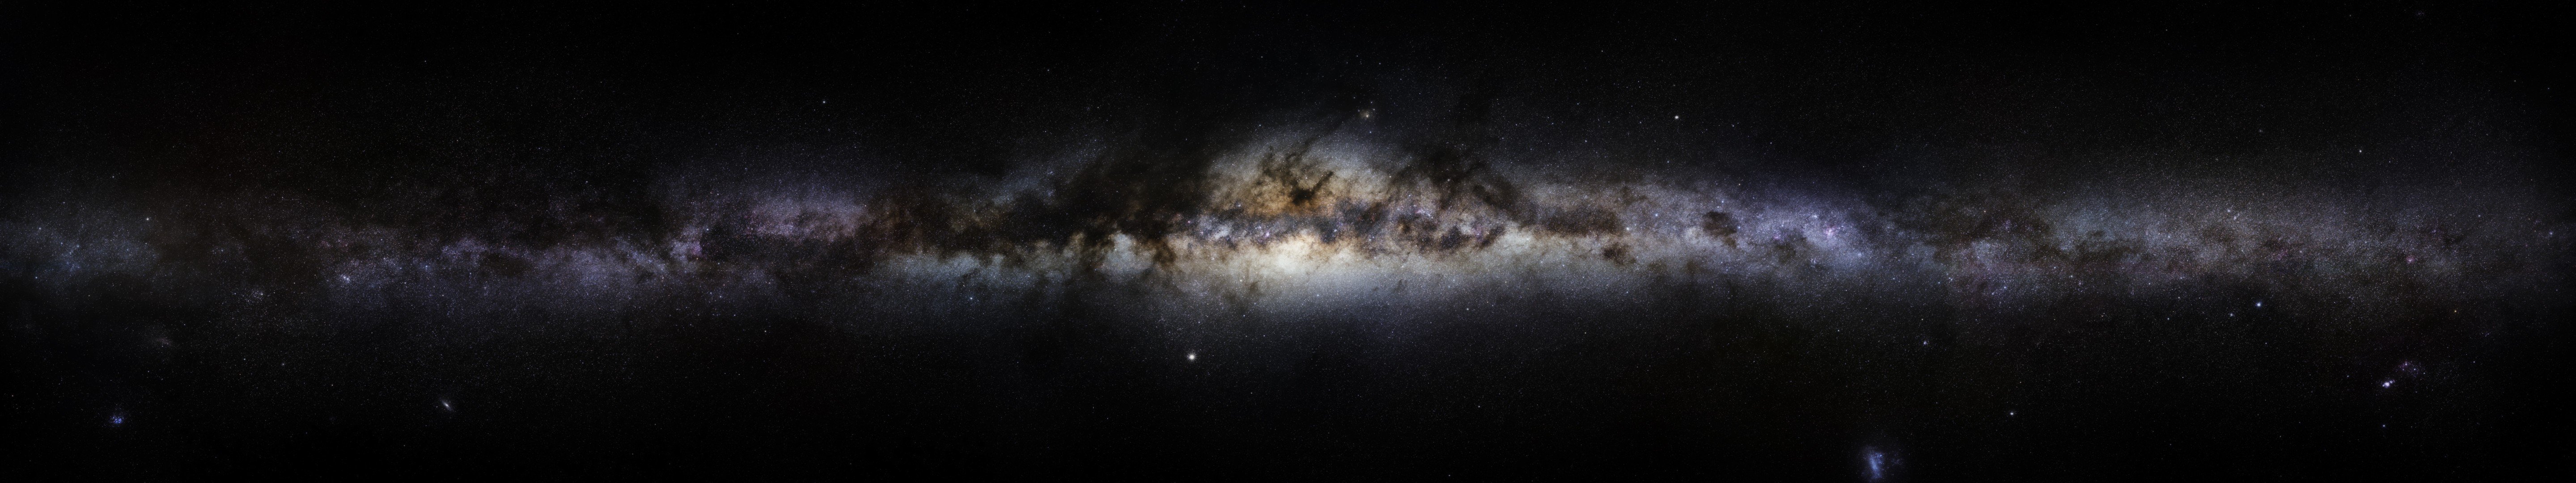 Milky Way Multiscreen Wallpaper